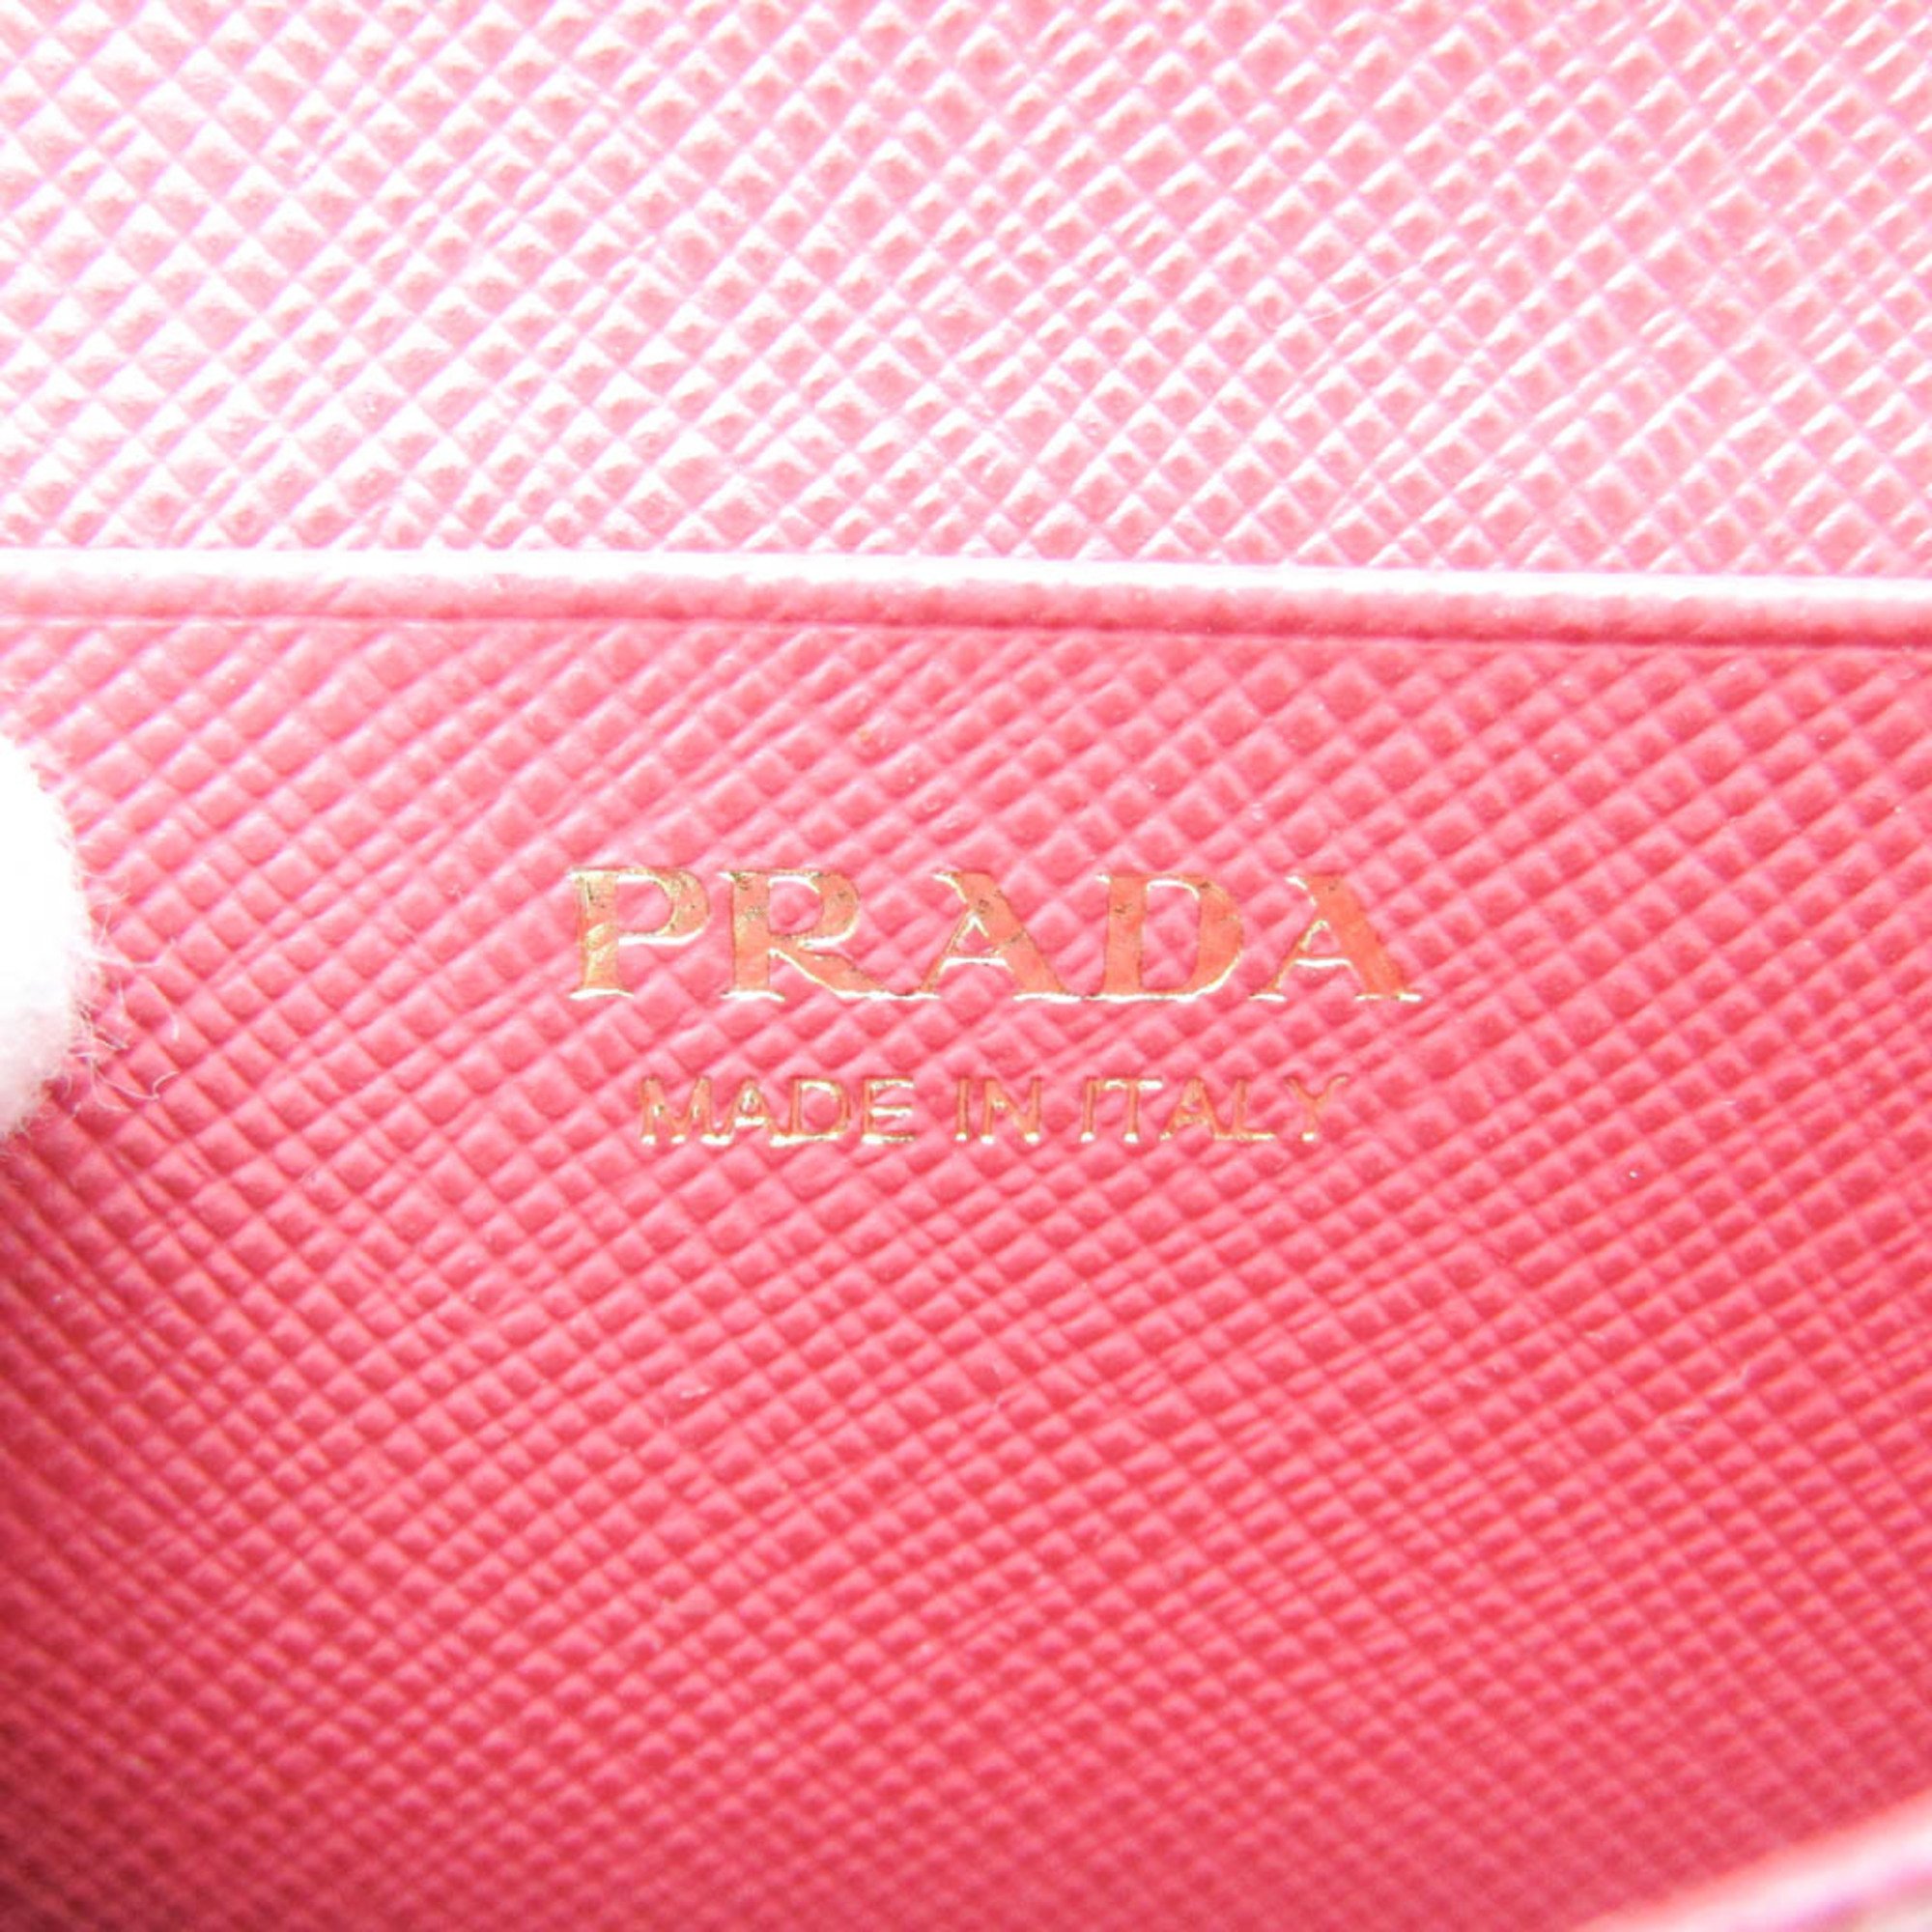 プラダ(Prada) レザー 名刺入れ ピンク